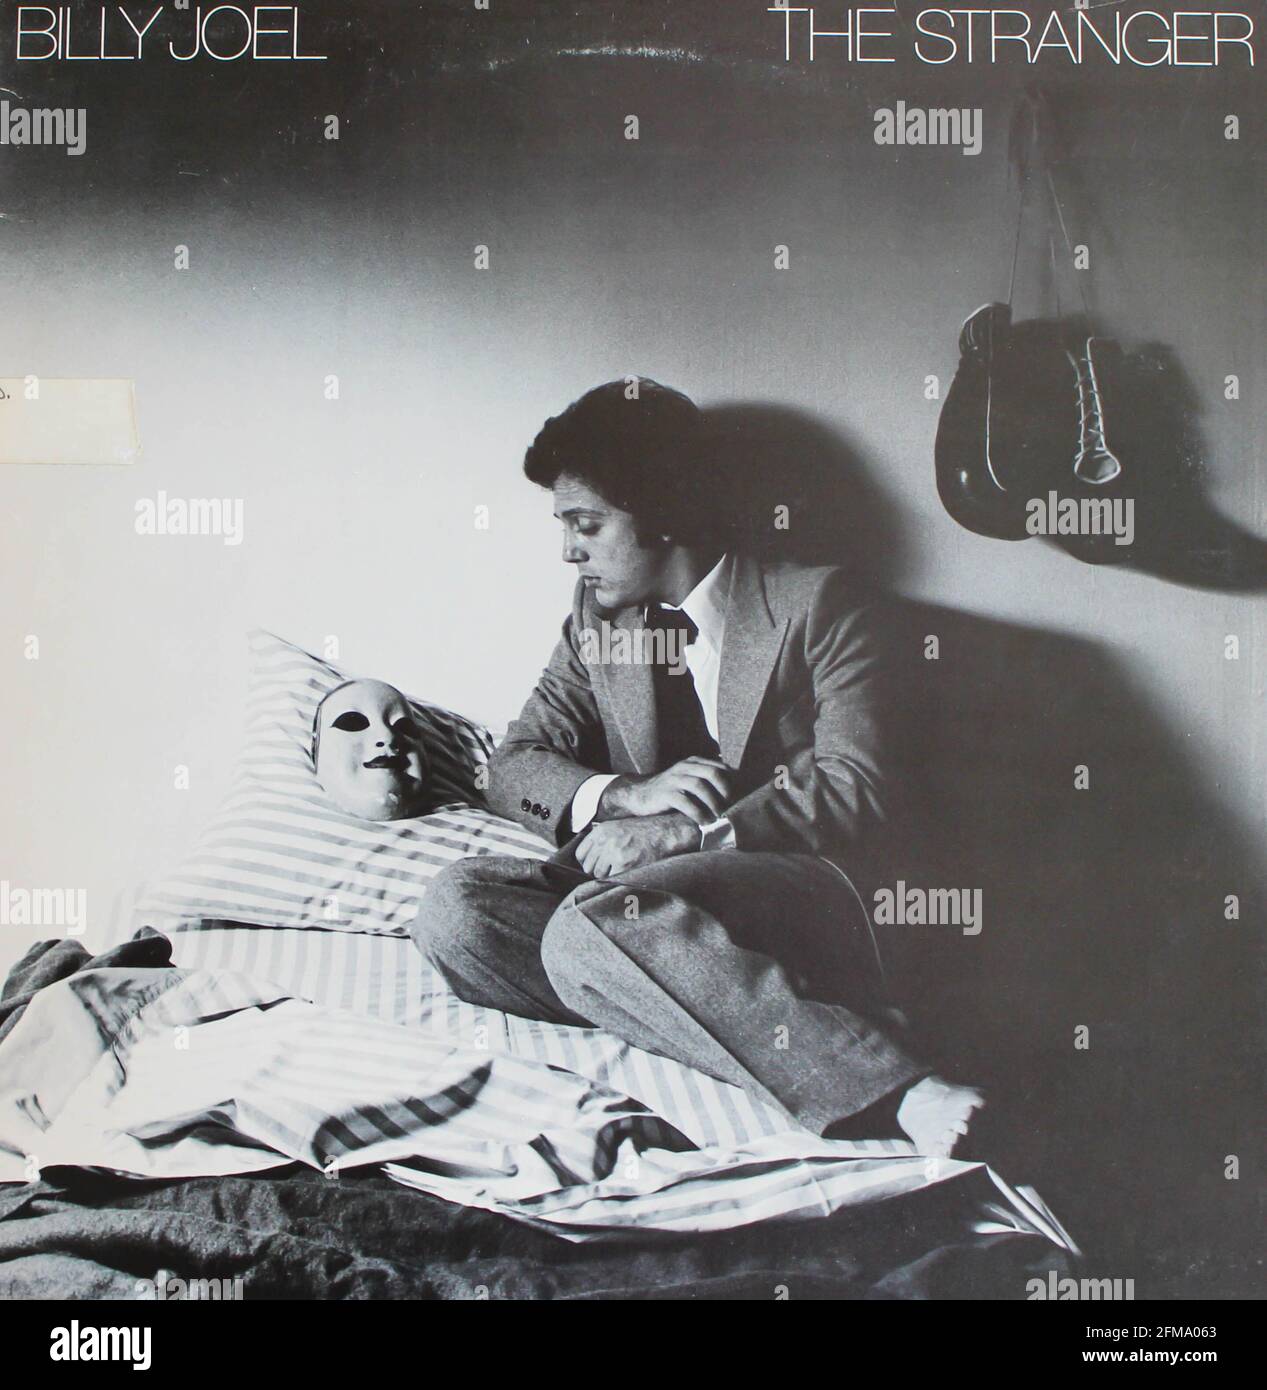 Pop rock and soft rock artist, Billy Joel álbum de música en disco LP de vinilo. Título: La portada del álbum Stranger Foto de stock